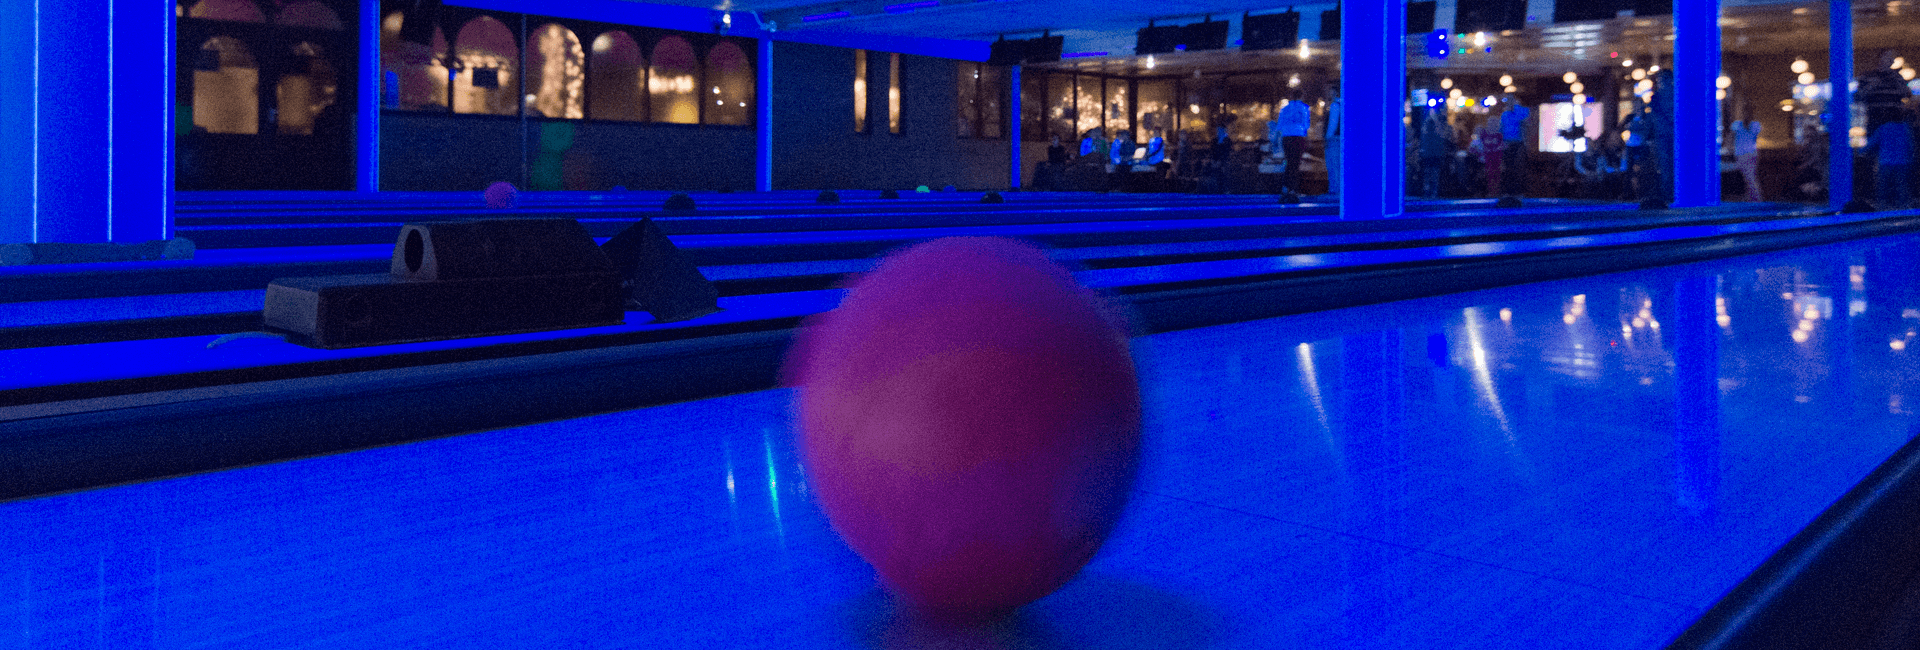 Bowlingbal op de baan tijdens disco bowlen